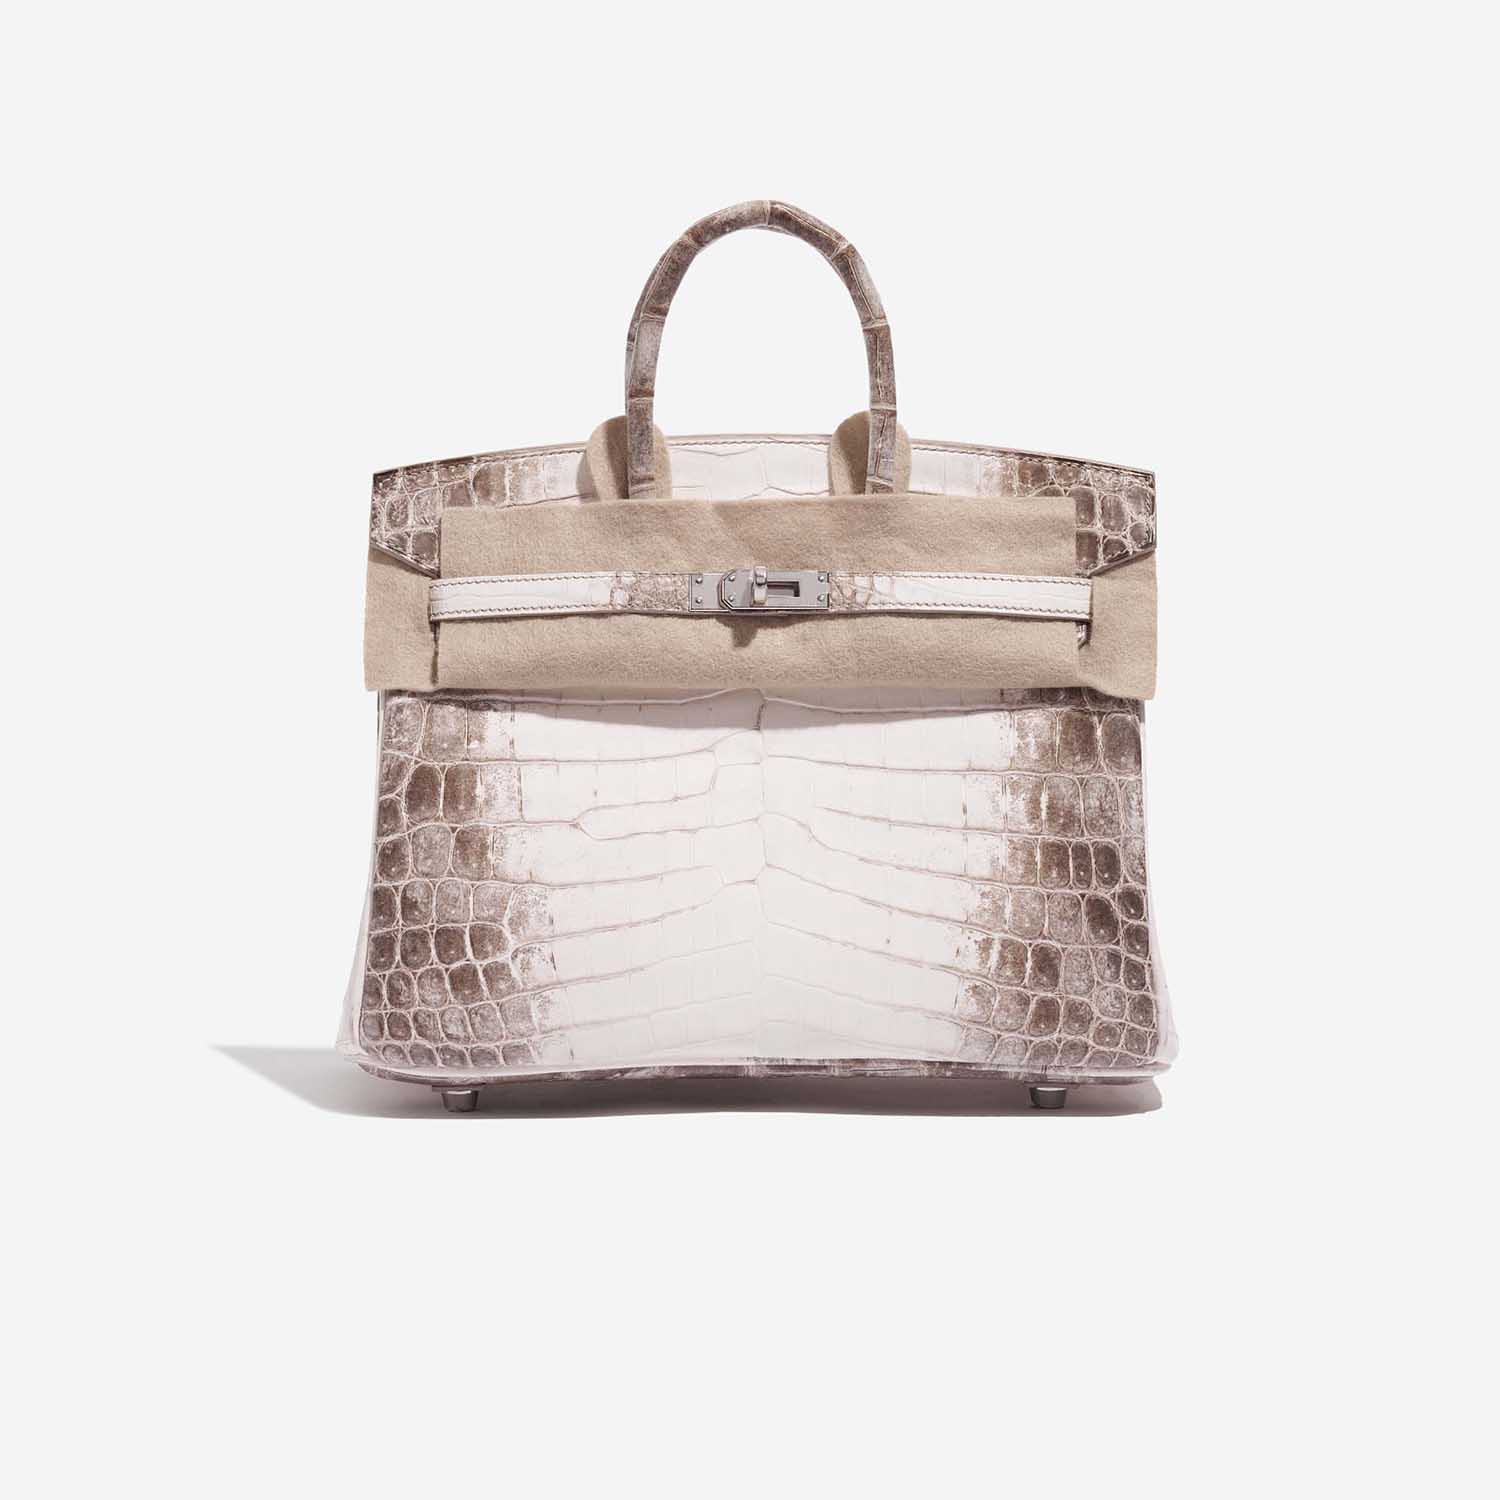 Pre-owned Hermès Tasche Birkin 25 Niloticus Crocodile Himalaya Blanc Brown, White Front Velt | Verkaufen Sie Ihre Designer-Tasche auf Saclab.com